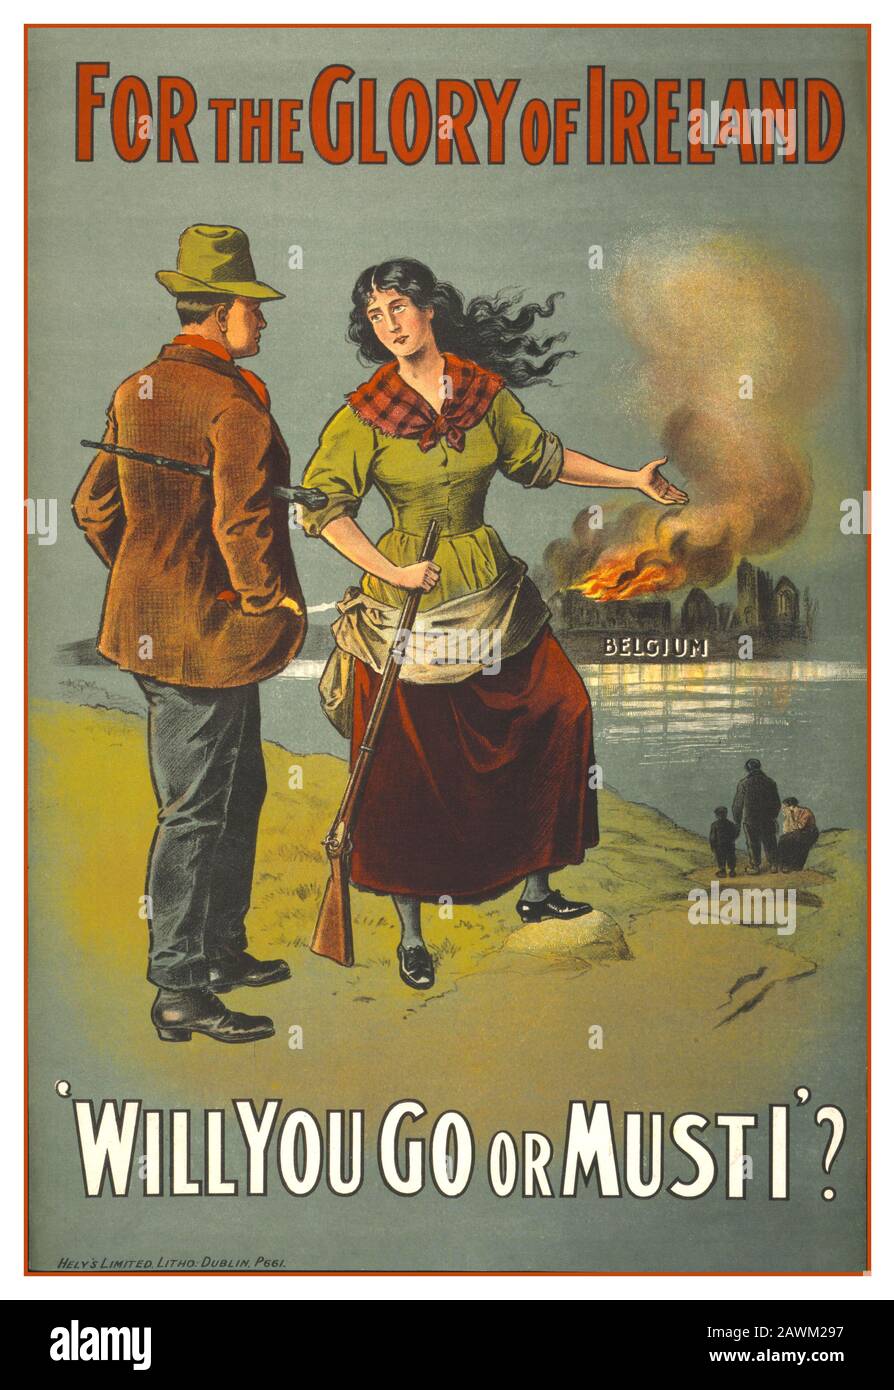 Das Propaganda-Rekrutierungsplakat "Zum Ruhm Irlands" aus dem 1. Weltkrieg Dieses Rekrutierungsplakat aus dem 1. Weltkrieg, das in Dublin, Irland, im Jahr 1915 veröffentlicht wurde, illustriert eine Frau, die ein Gewehr hält. Sie zeigt auf ein entferntes Ufer in Rauch & Flammen, das "Belgien" unterzeichnet hat, während sie den Mann anspricht. Die Bildunterschrift "Wirst du gehen oder darf ich?" appelliert an seinen Stolz, da er von einer Frau kommt und hoffentlich Männer dazu ermutigen würde, sich einzuladen. Zwischen 1914 und 1916 meldeten sich etwa 180.000 Ire freiwillig zum Dienst in den britischen Streitkräften des 1. Weltkriegs. Stockfoto